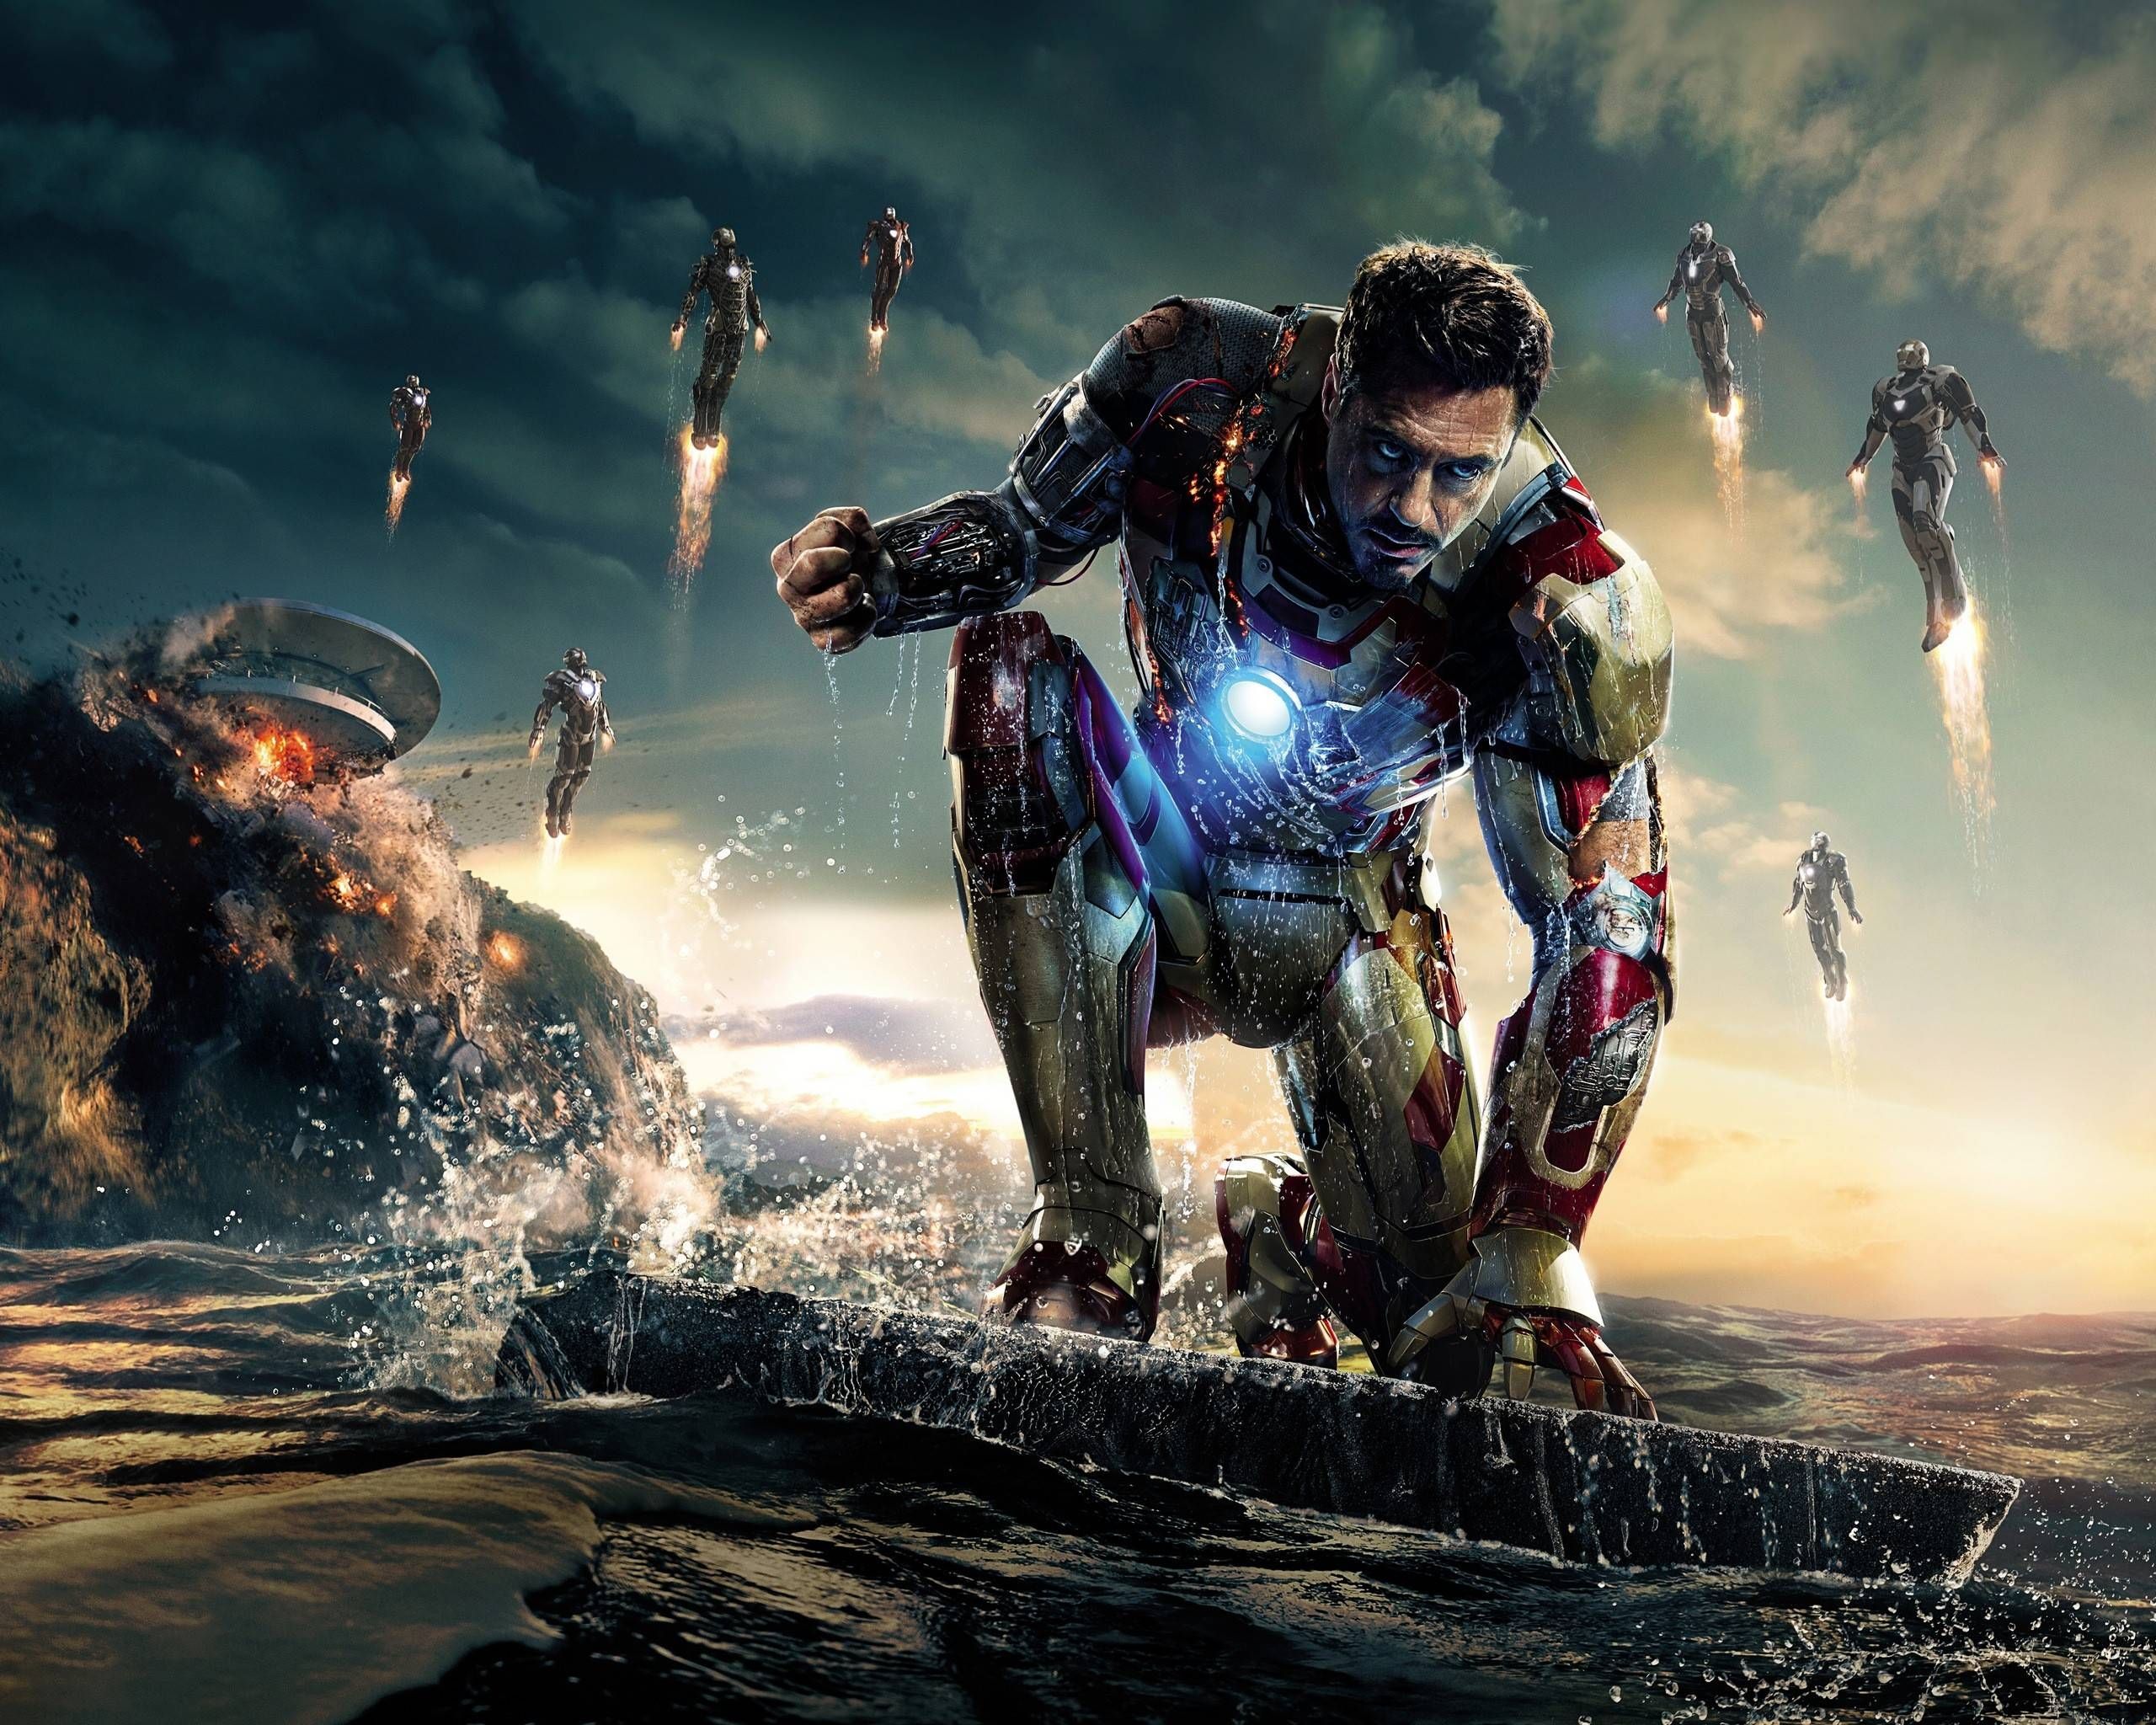 Tony Stark, công nghệ CGI: Hãy khám phá những cảnh quay đẹp như tranh vẽ được tạo ra bằng công nghệ CGI trong phim của Tony Stark, bộ phim không thể bỏ qua cho những fan của siêu anh hùng Marvel.